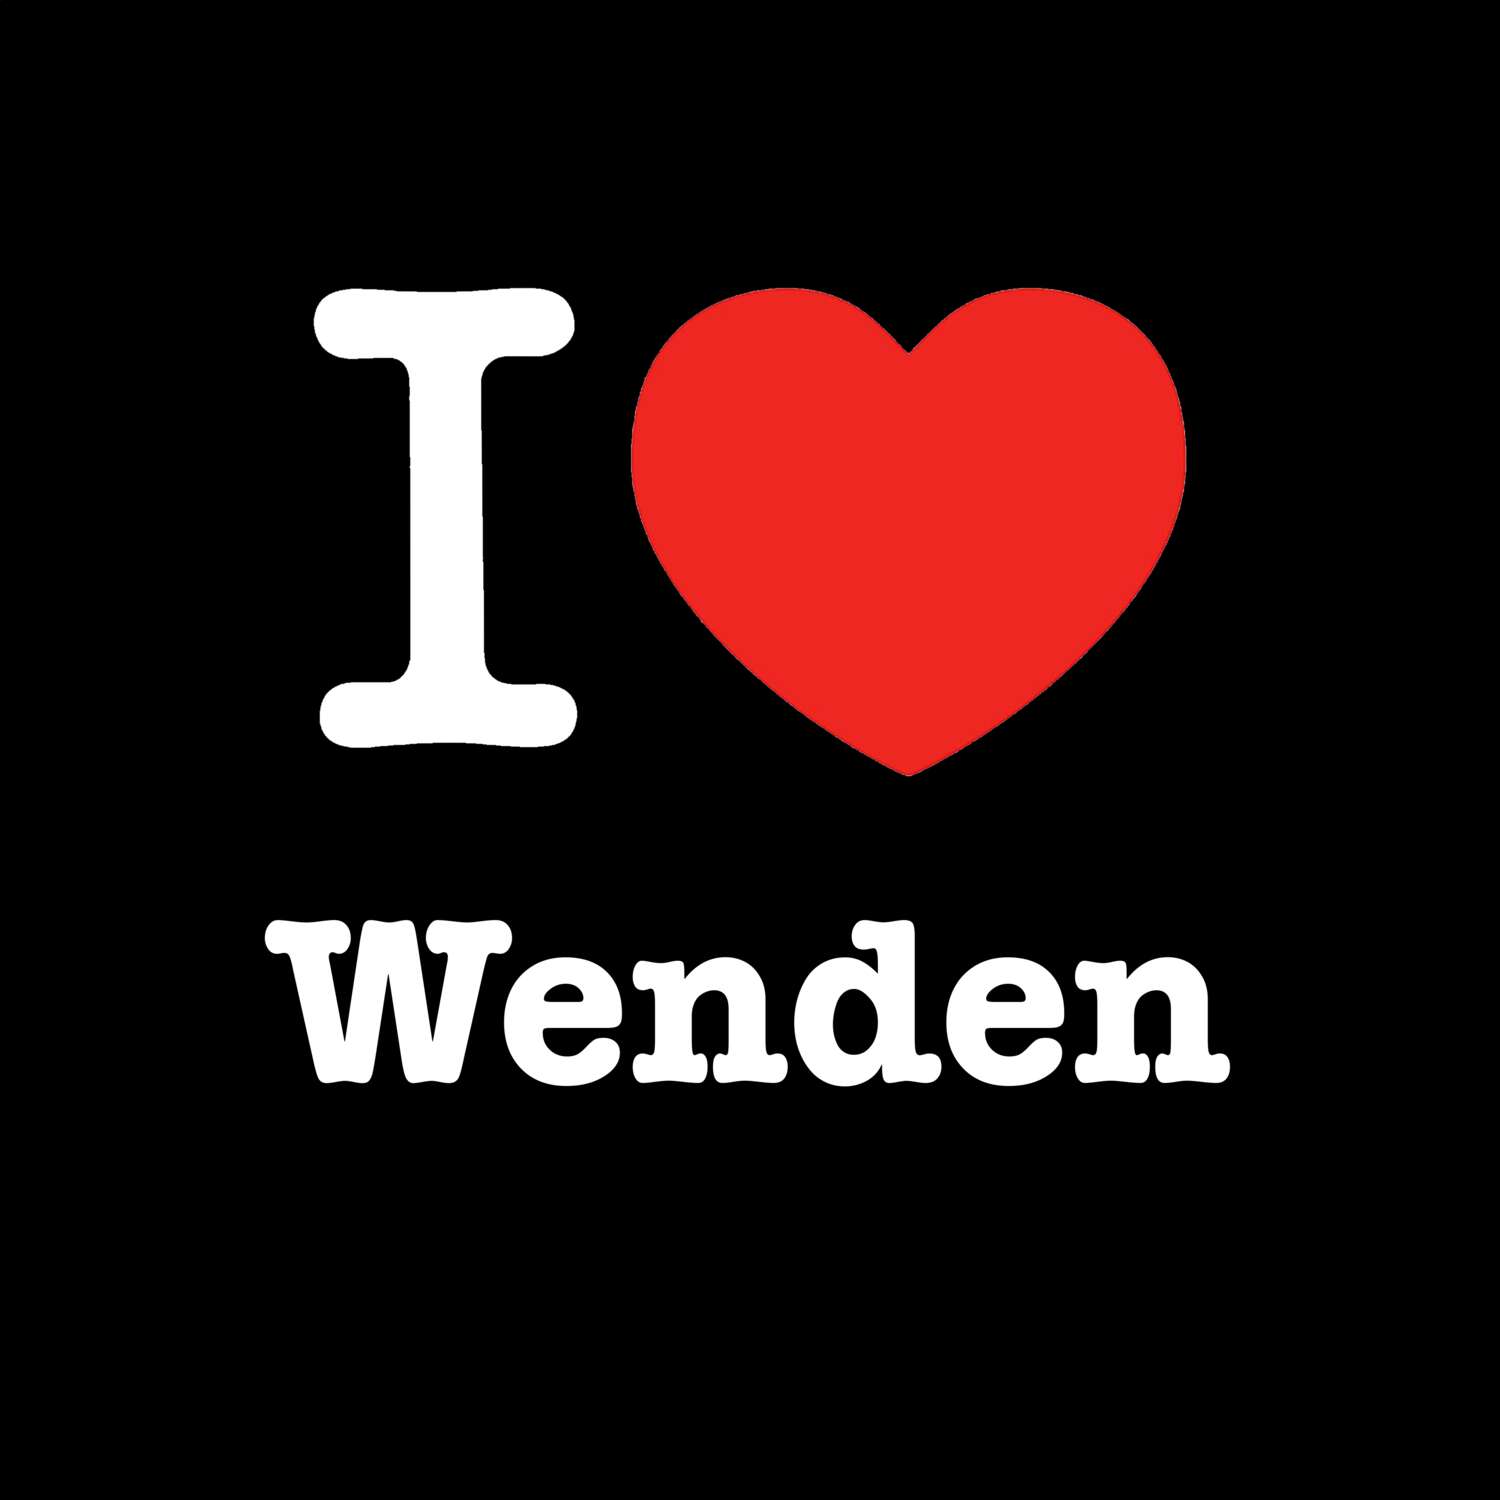 Wenden T-Shirt »I love«